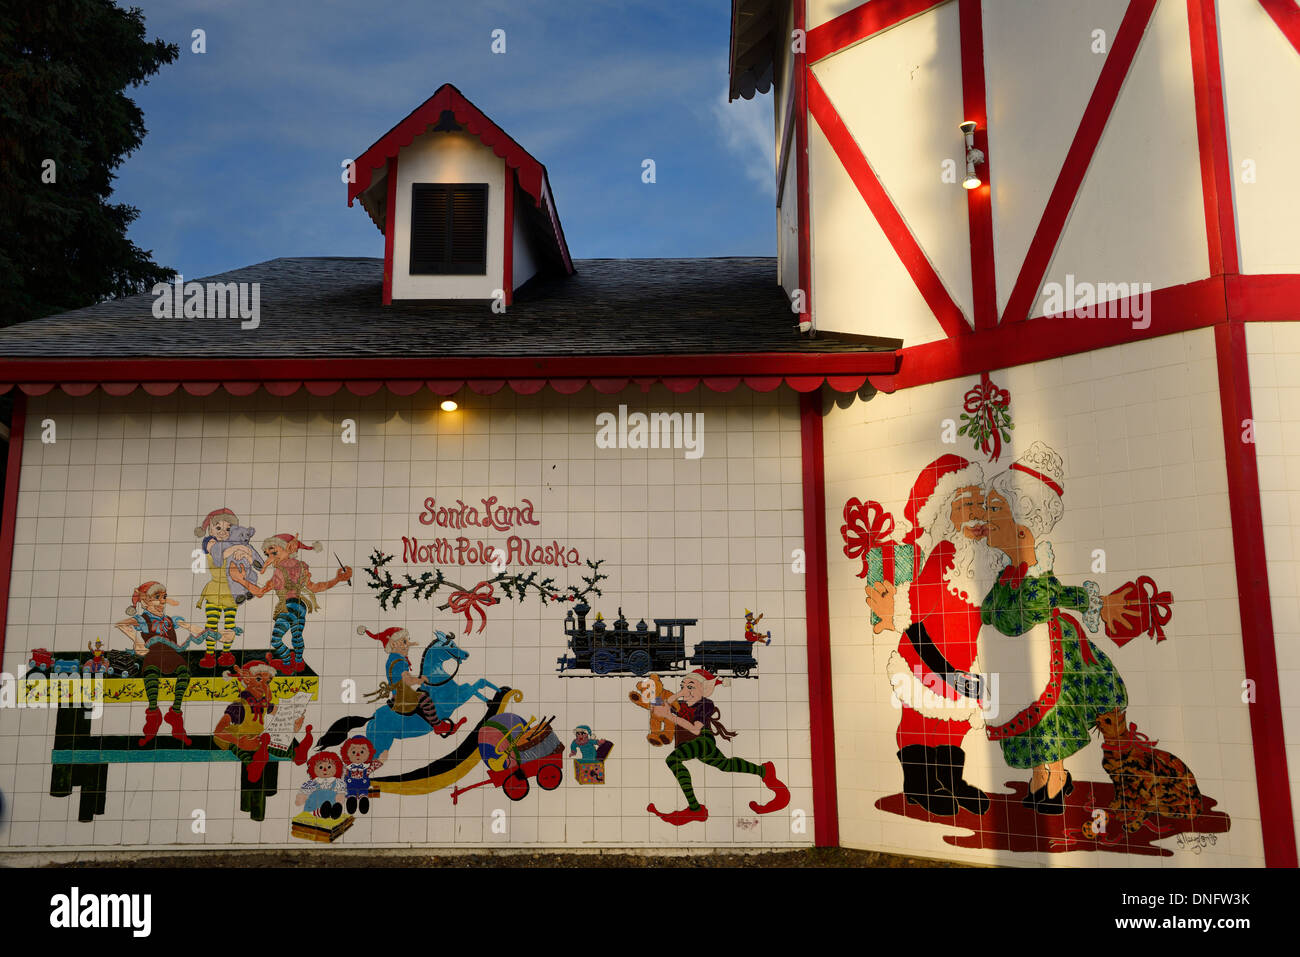 Christmas scenes in ceramic tiles at the Santa Claus House at SantaLand North Pole Alaska USA Stock Photo